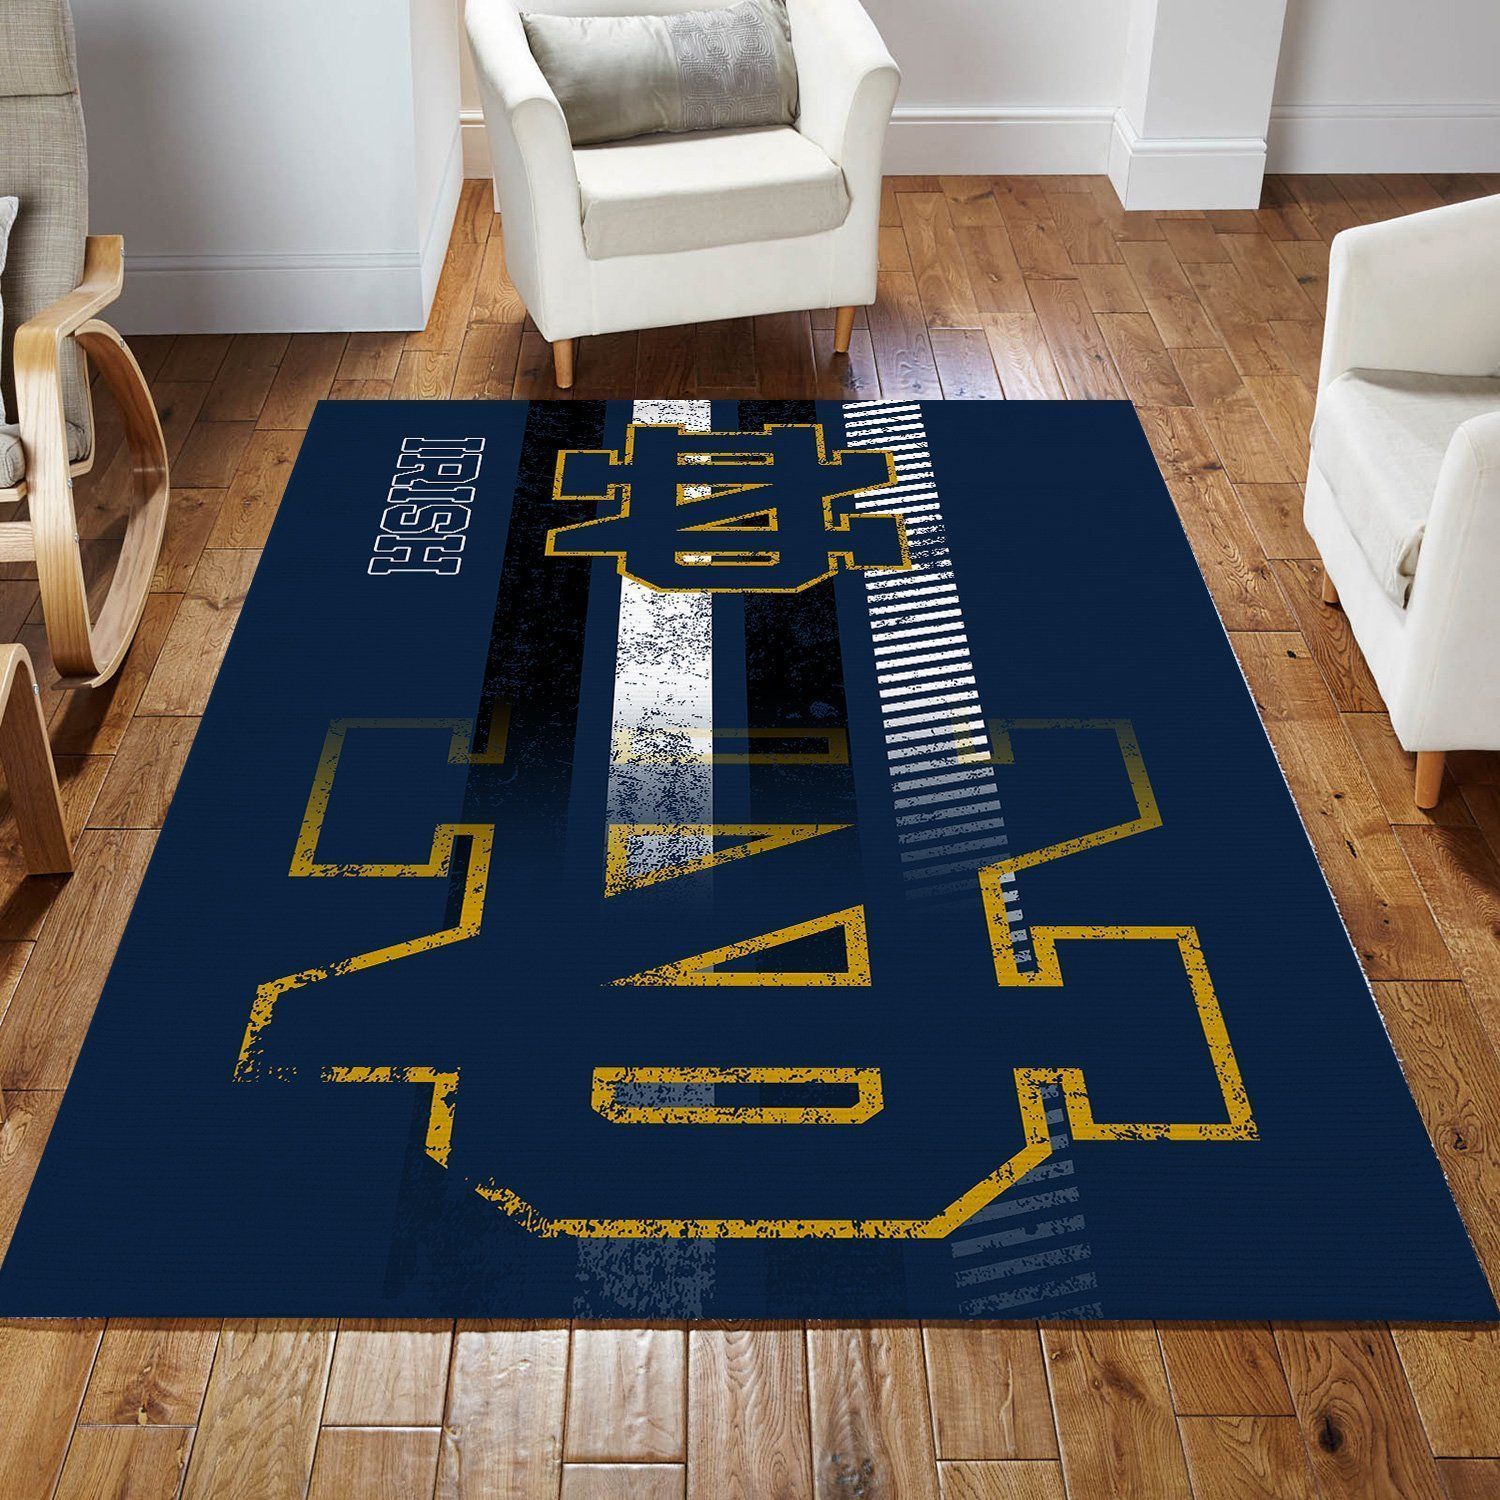 Notre Dame Fighting Irish Rug Room Carpet Sport Custom Area Floor Mat Home Decor - Indoor Outdoor Rugs 3